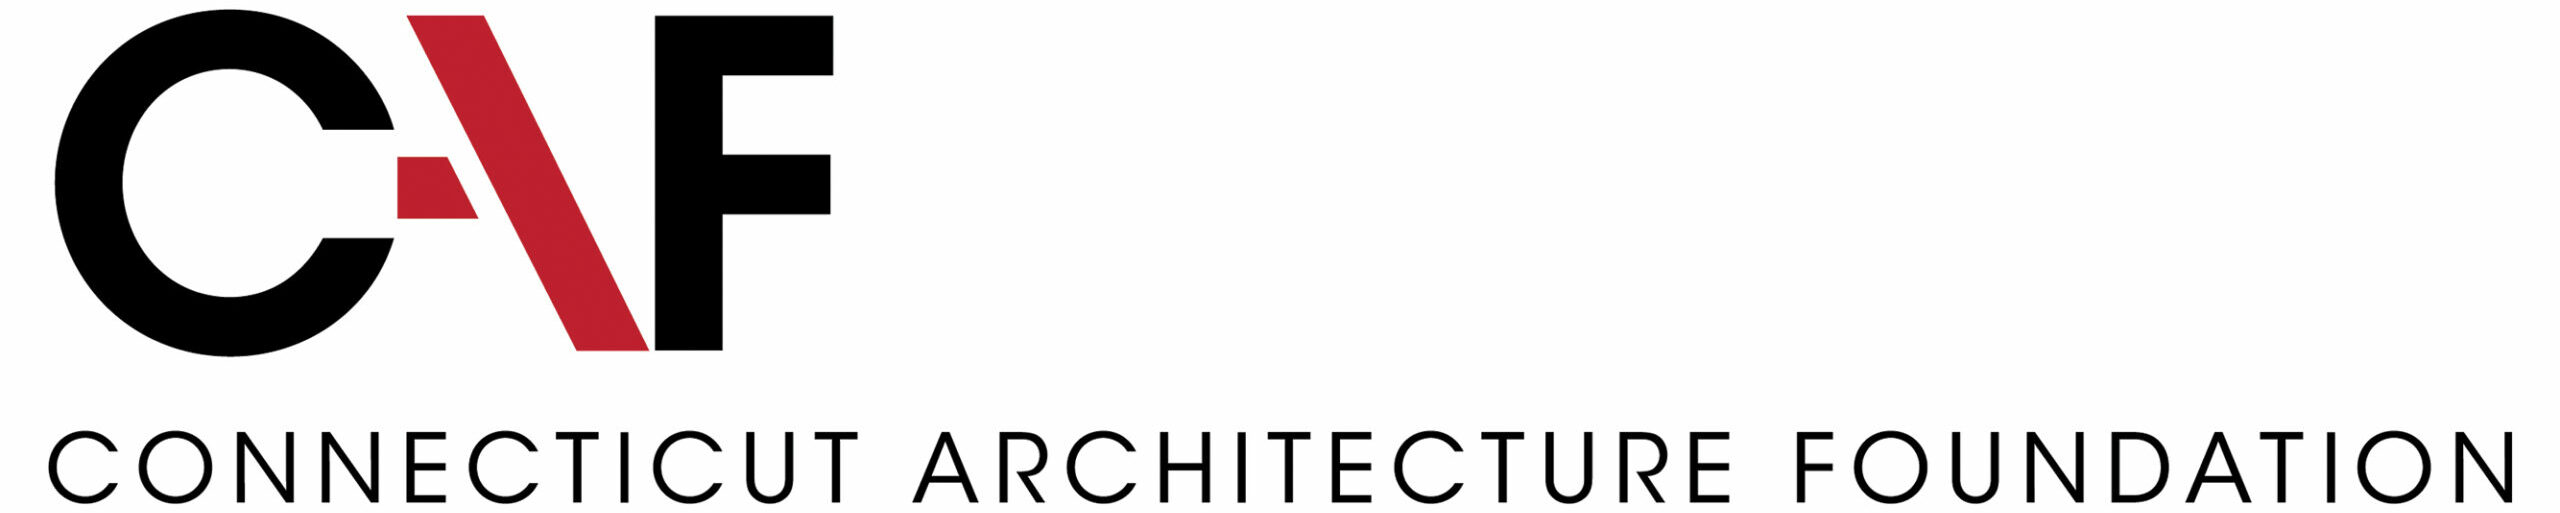 Connecticut Architecture Foundation